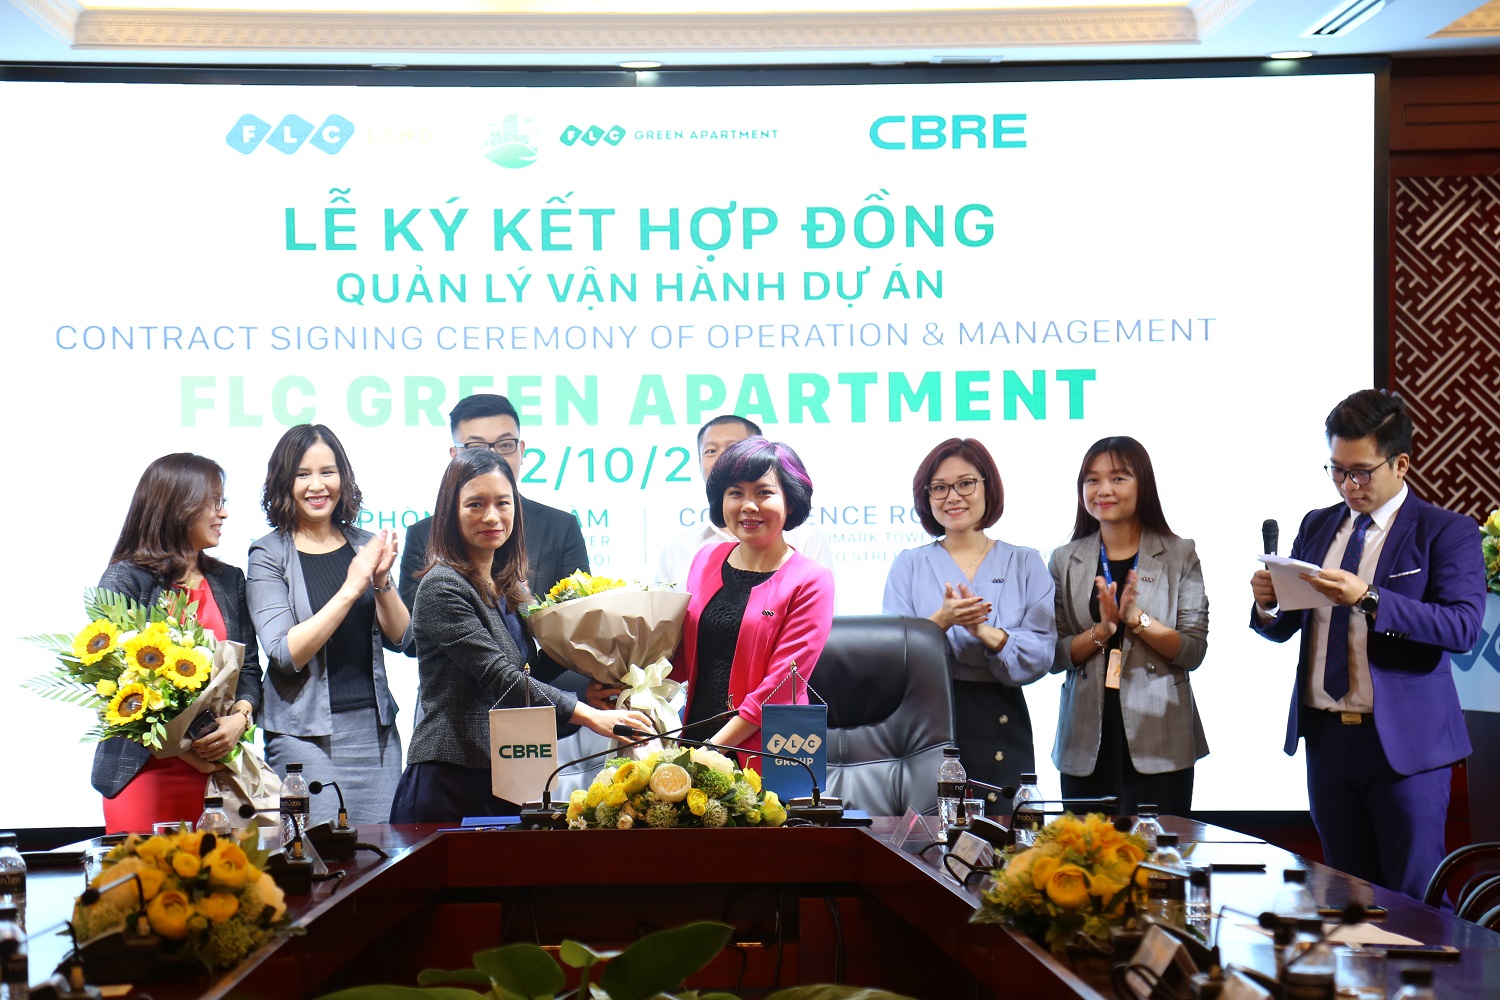 Ảnh 1: Đại diện Tập đoàn FLC và CBRE ký hợp đồng quản lý vận hành FLC Green Apartment